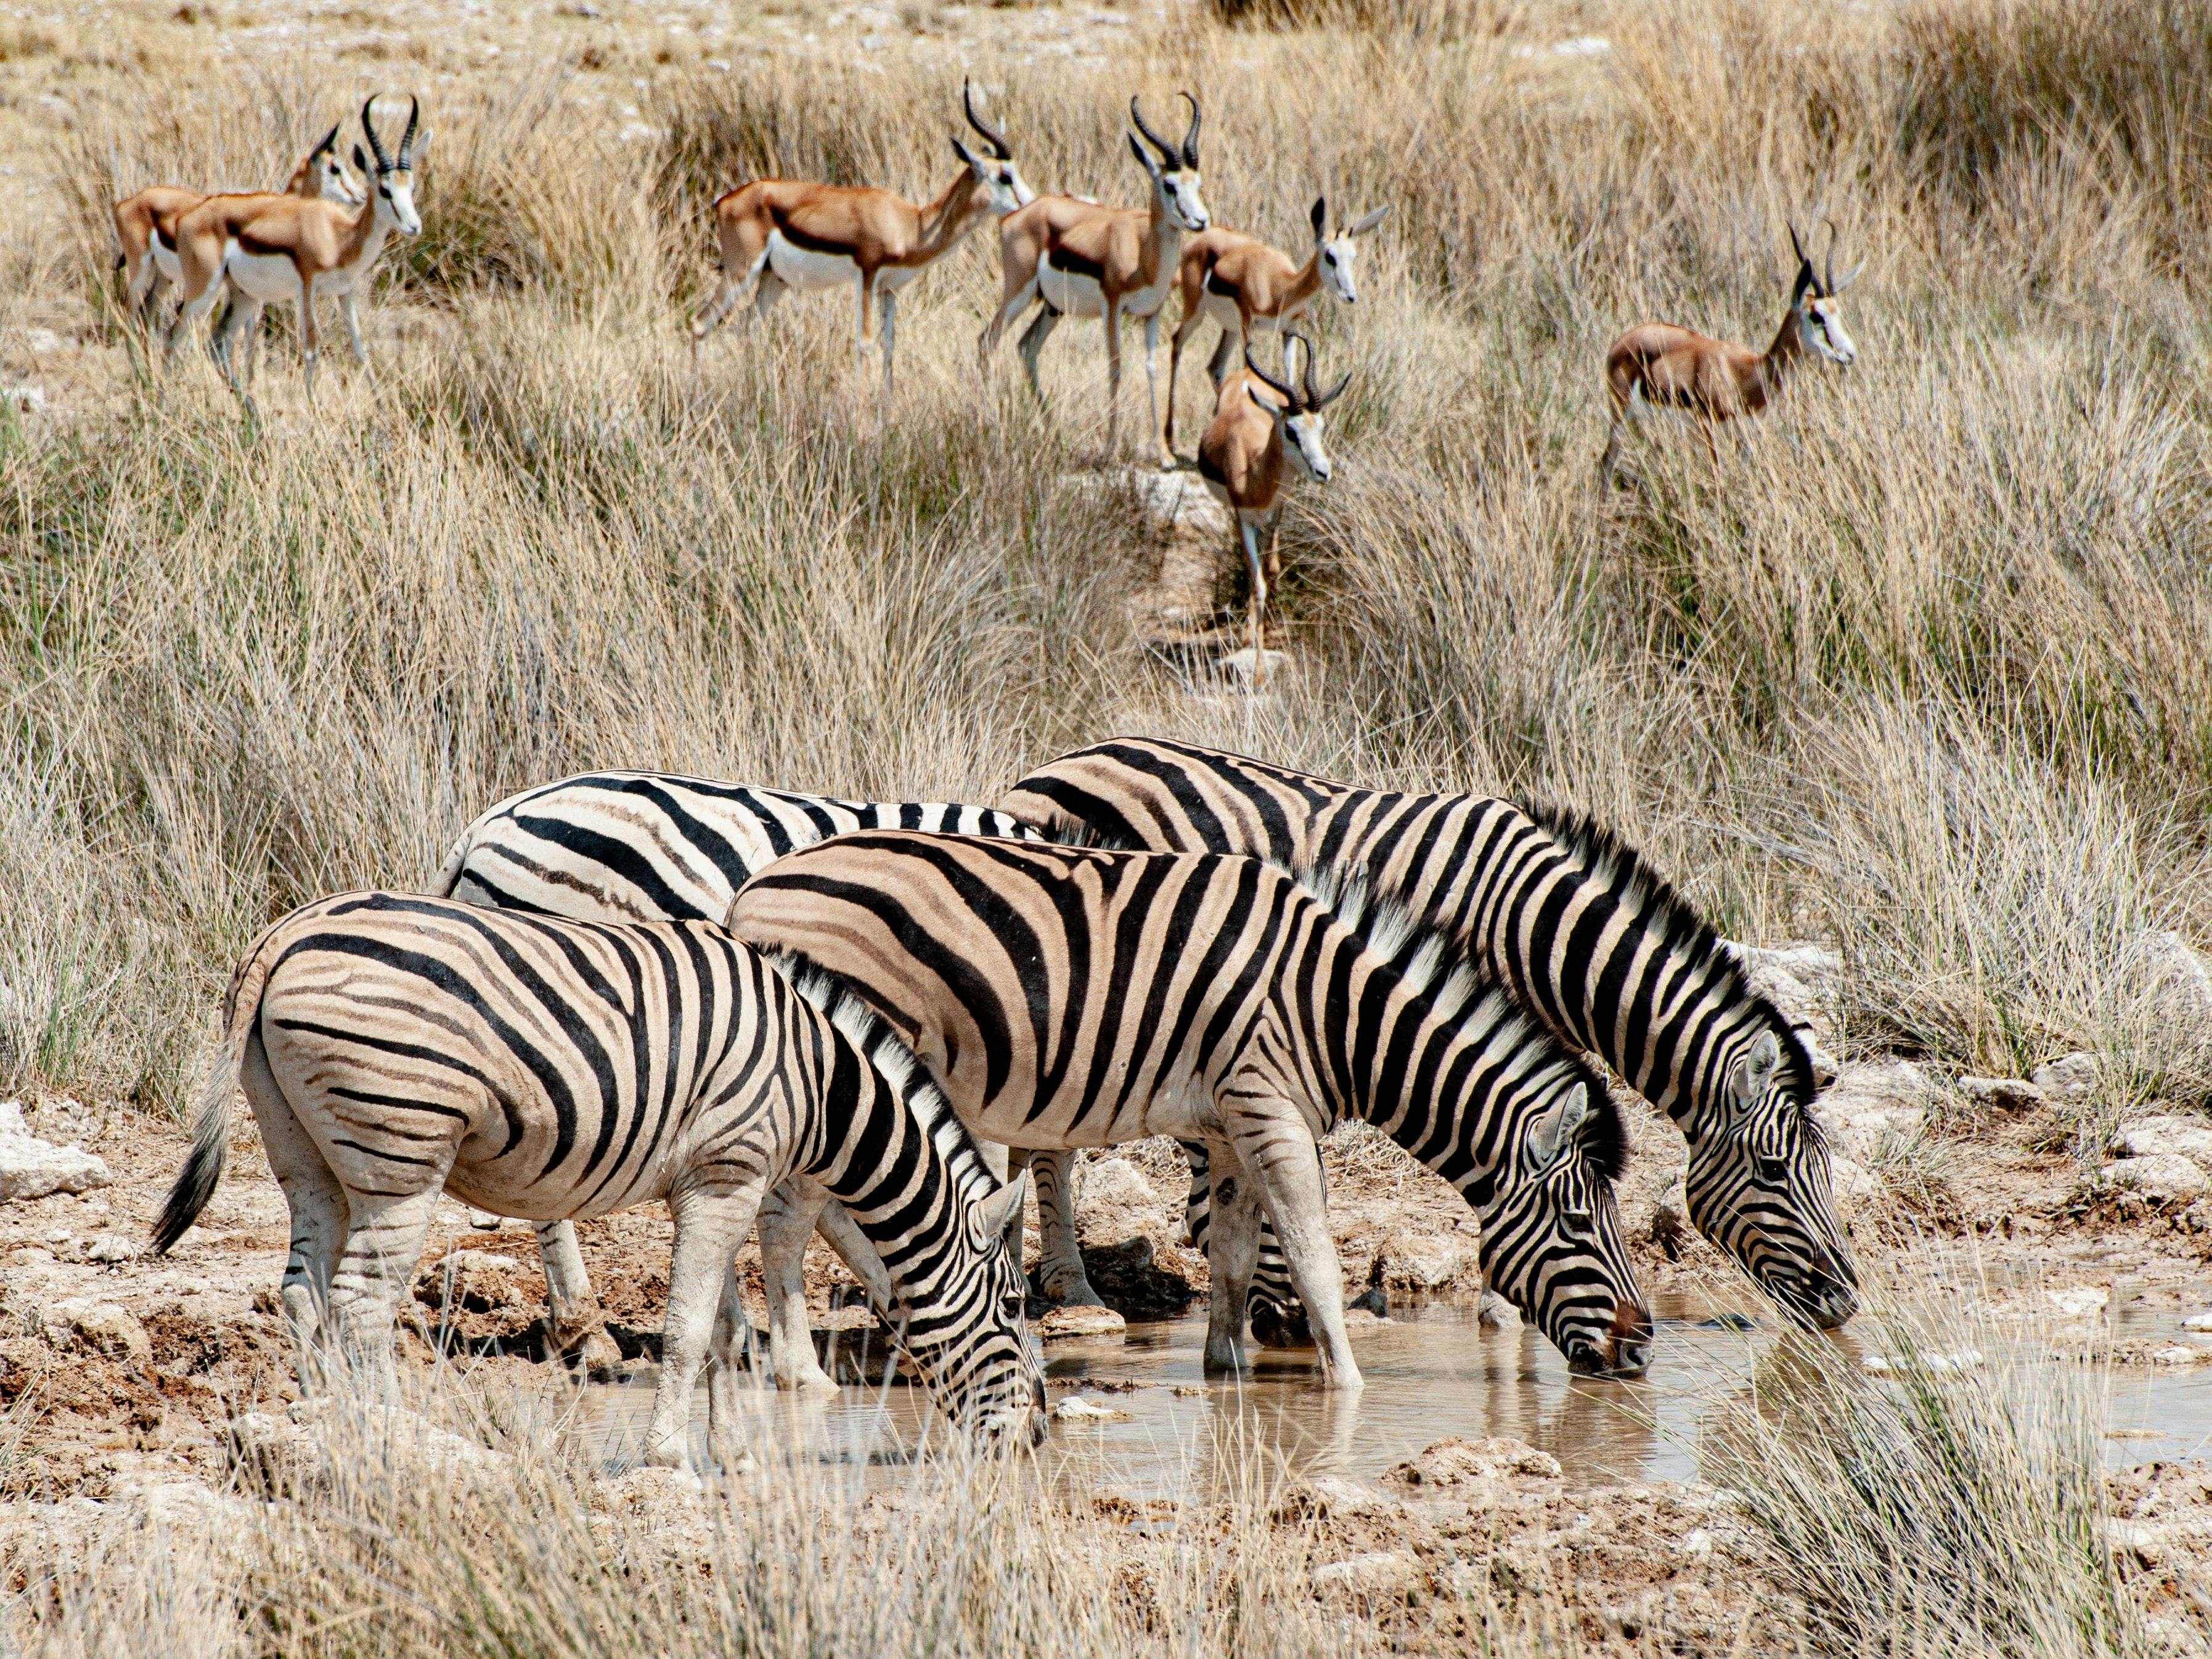 Zebras and antilopes in Etosha Namibia.